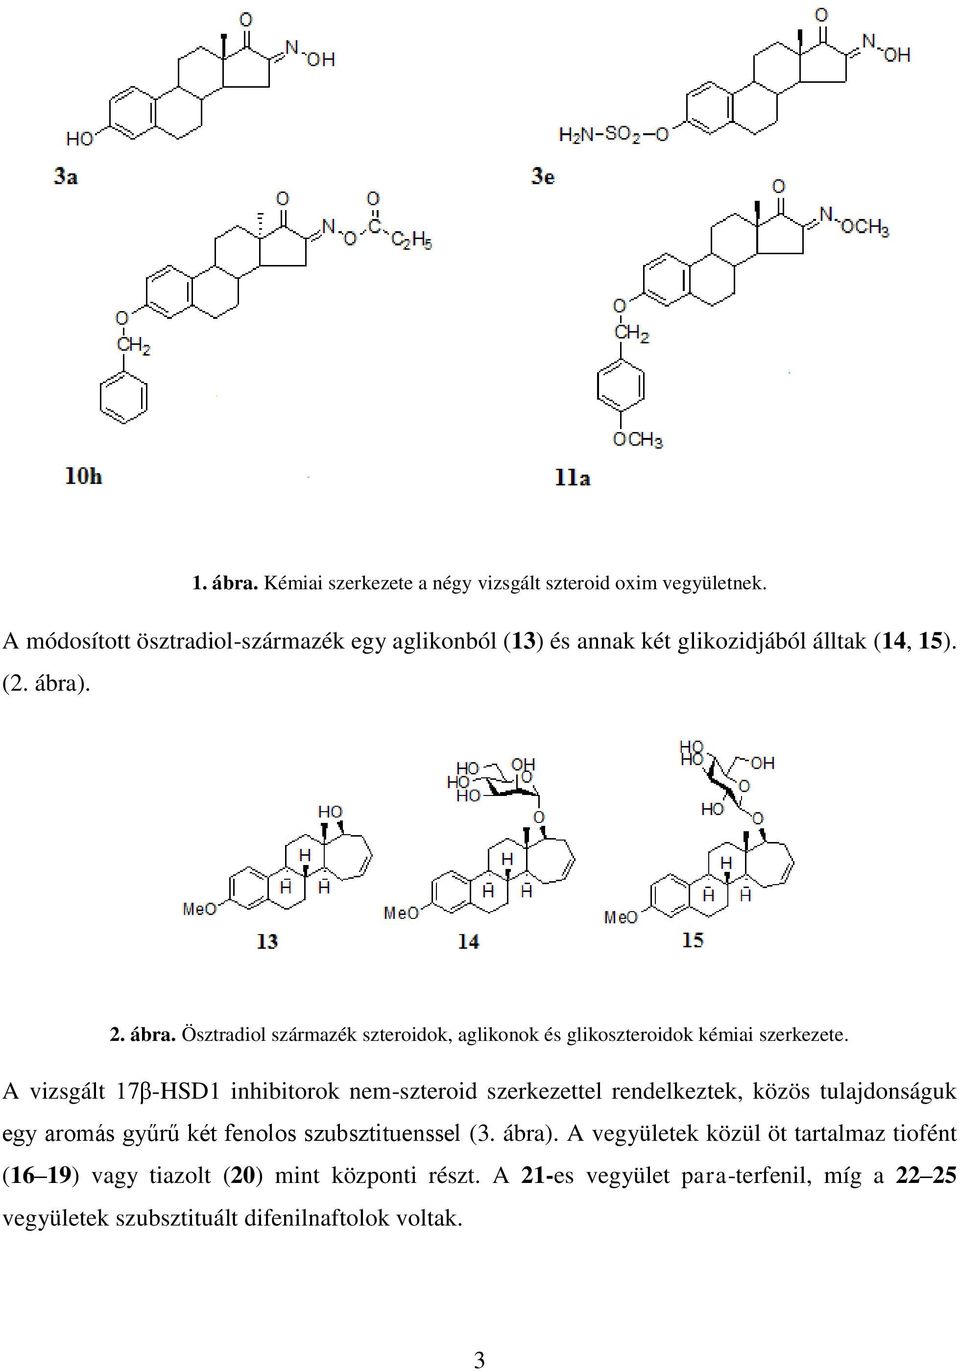 . 2. ábra. Ösztradiol származék szteroidok, aglikonok és glikoszteroidok kémiai szerkezete.